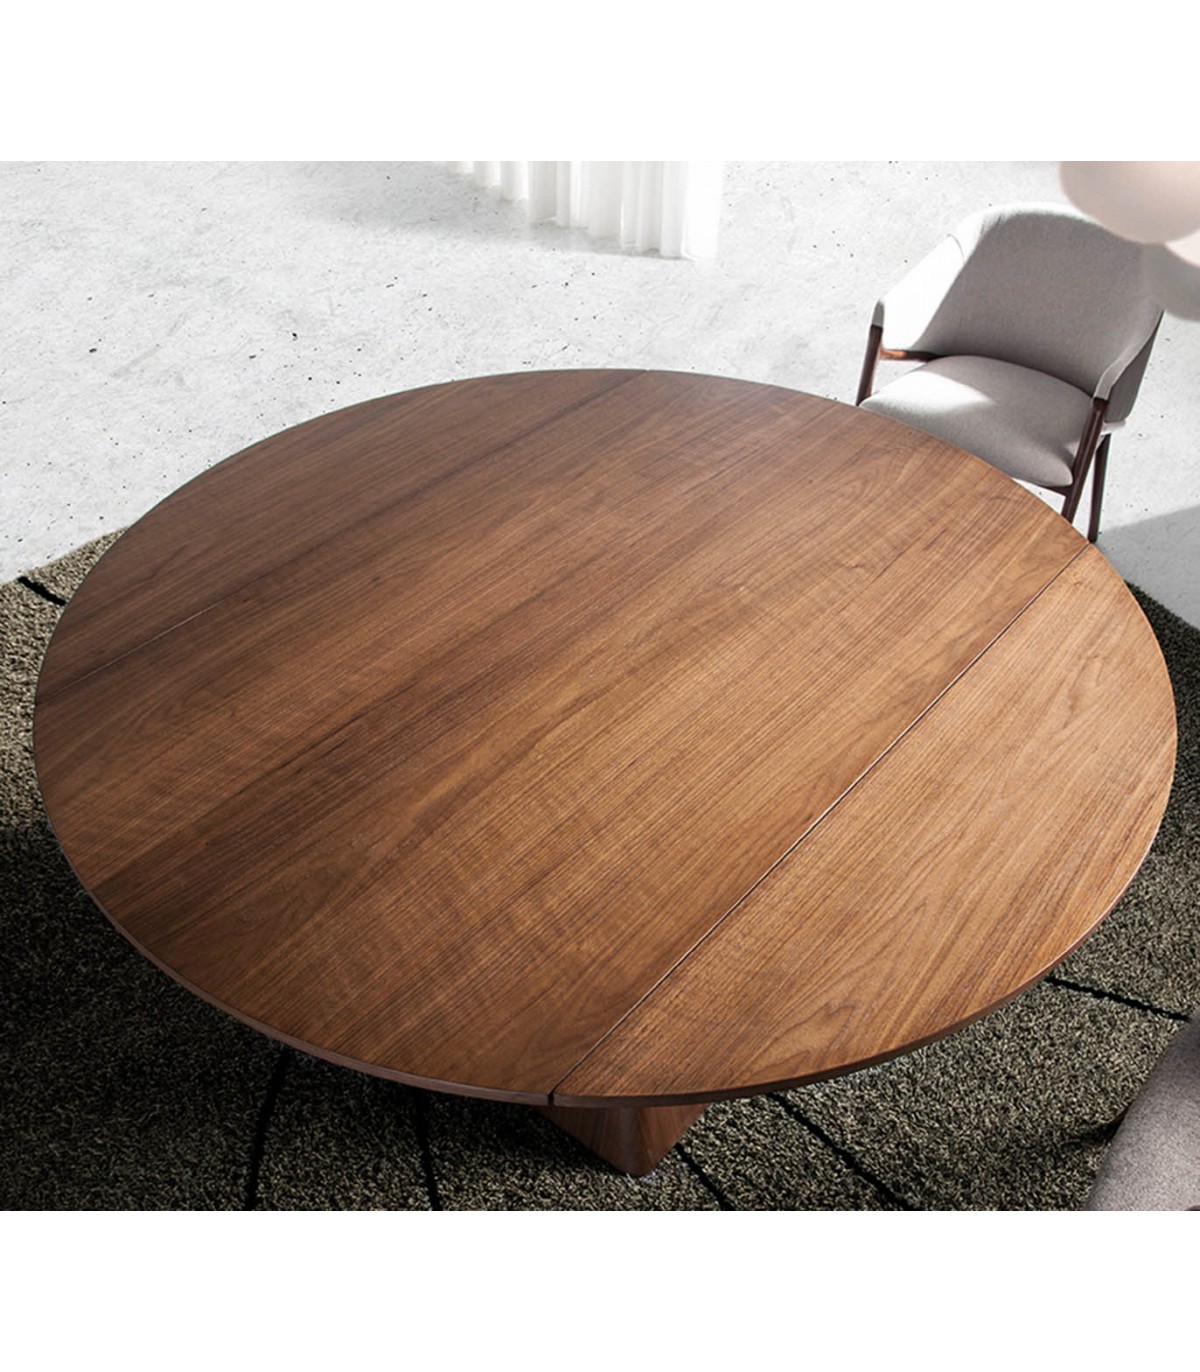 Mesa de comedor redonda extensible de madera maciza moderna marrón medio